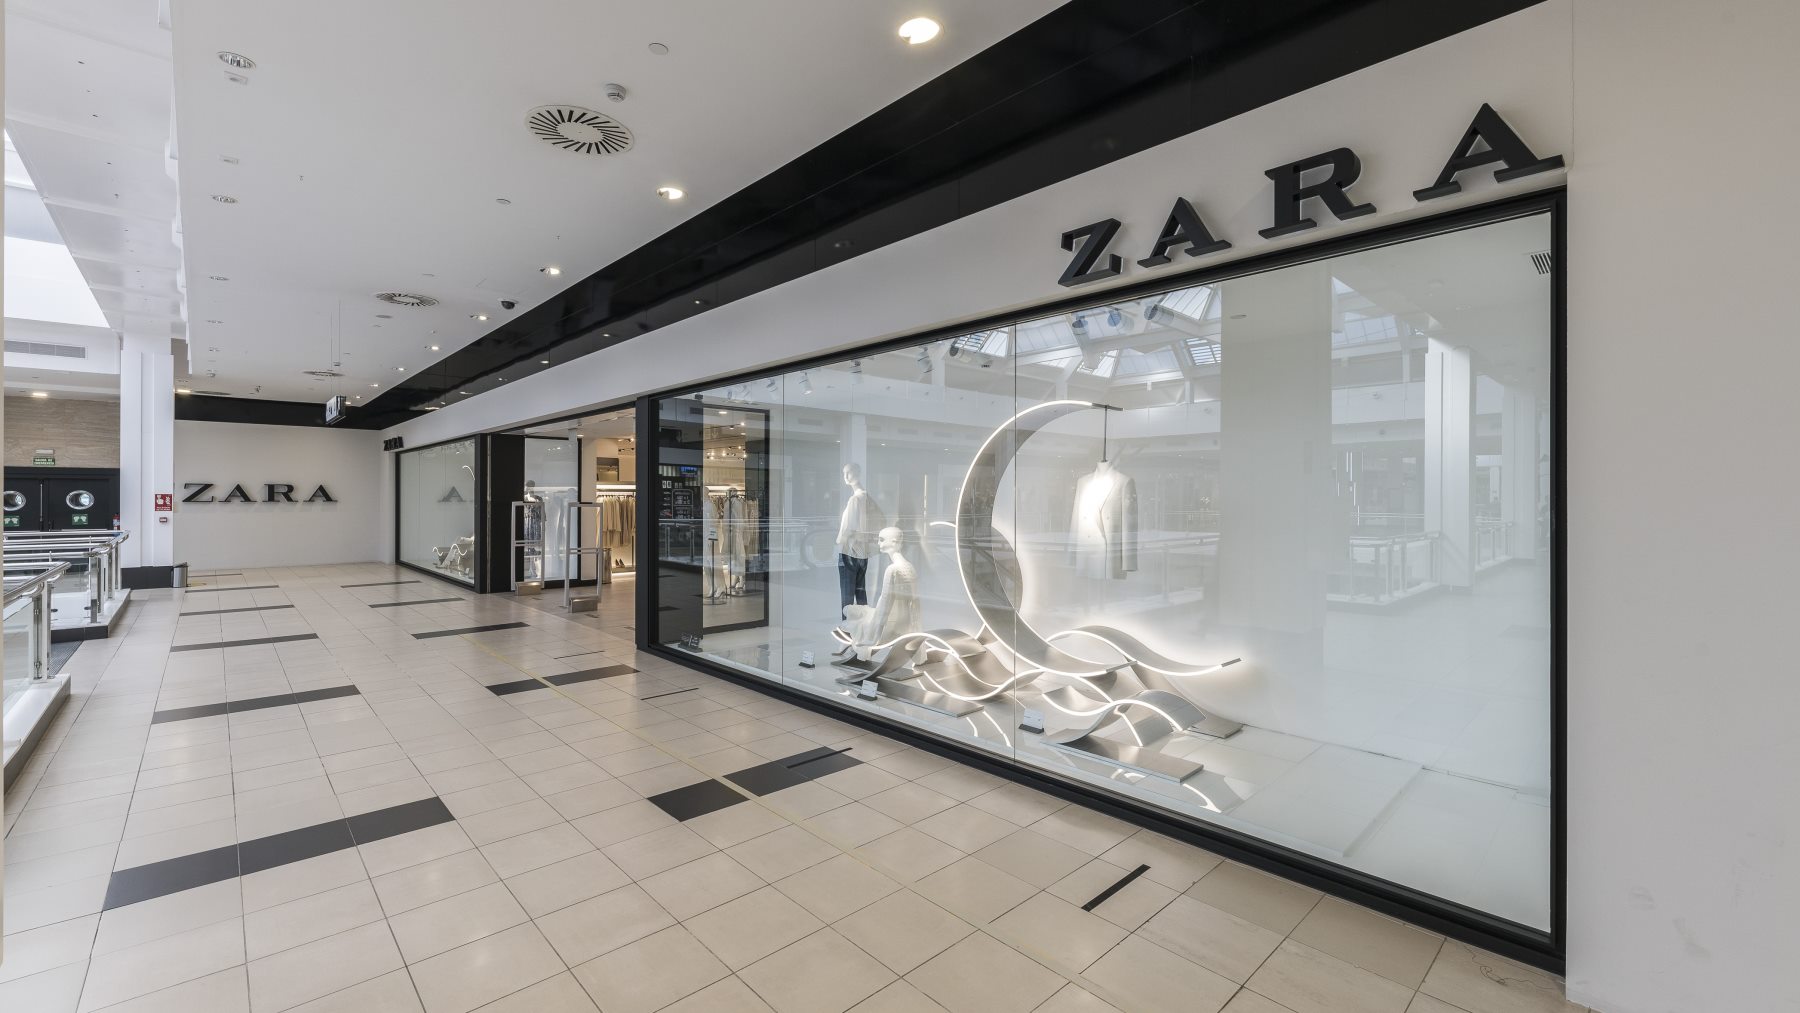 Si tienes curiosidad de saber por qué Zara se llama Zara, sigue leyendo y descubre por qué Amancio Ortega decidió ponerle ese nombre a su primera tienda… ¡una historia curiosa!. 